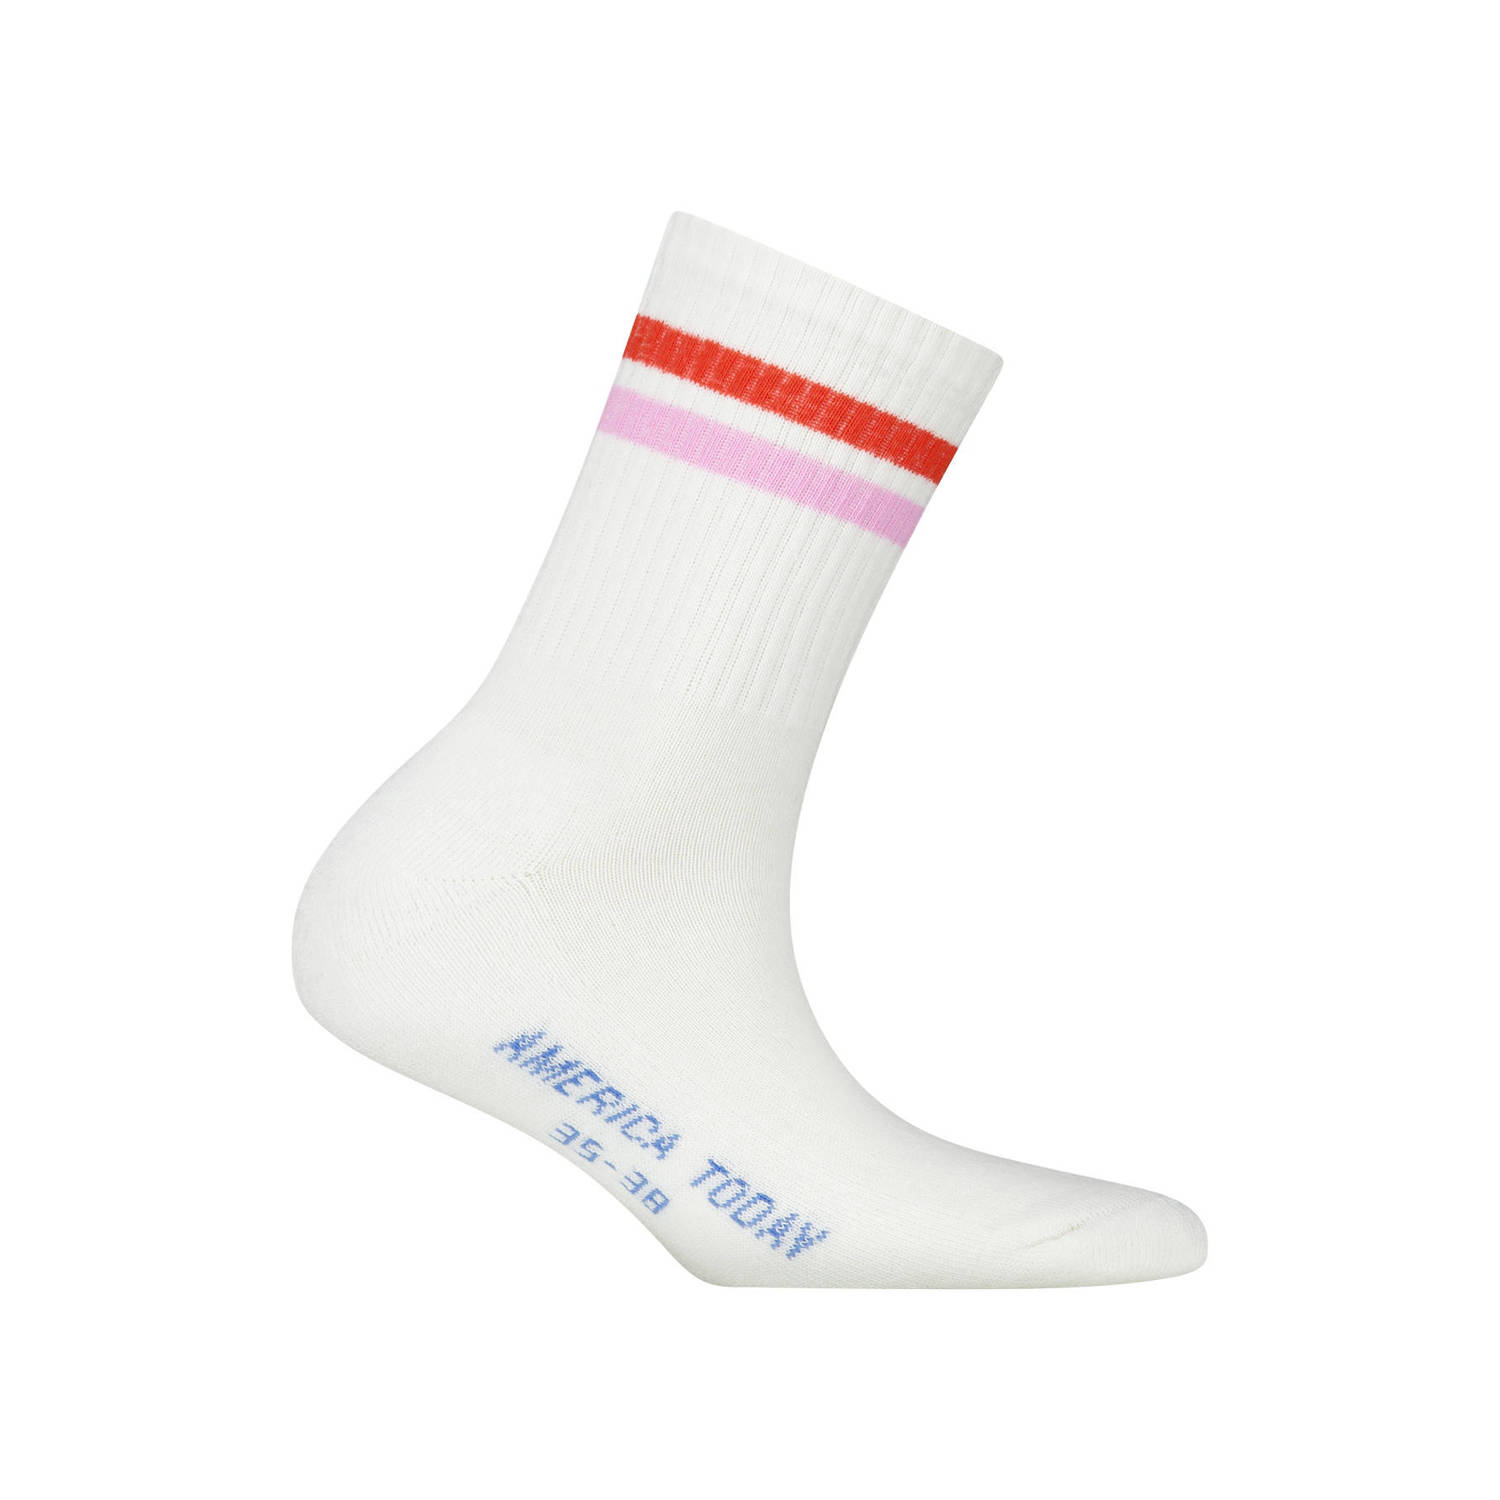 America Today sokken met rood en roze streep Wit Biologisch katoen 31 34